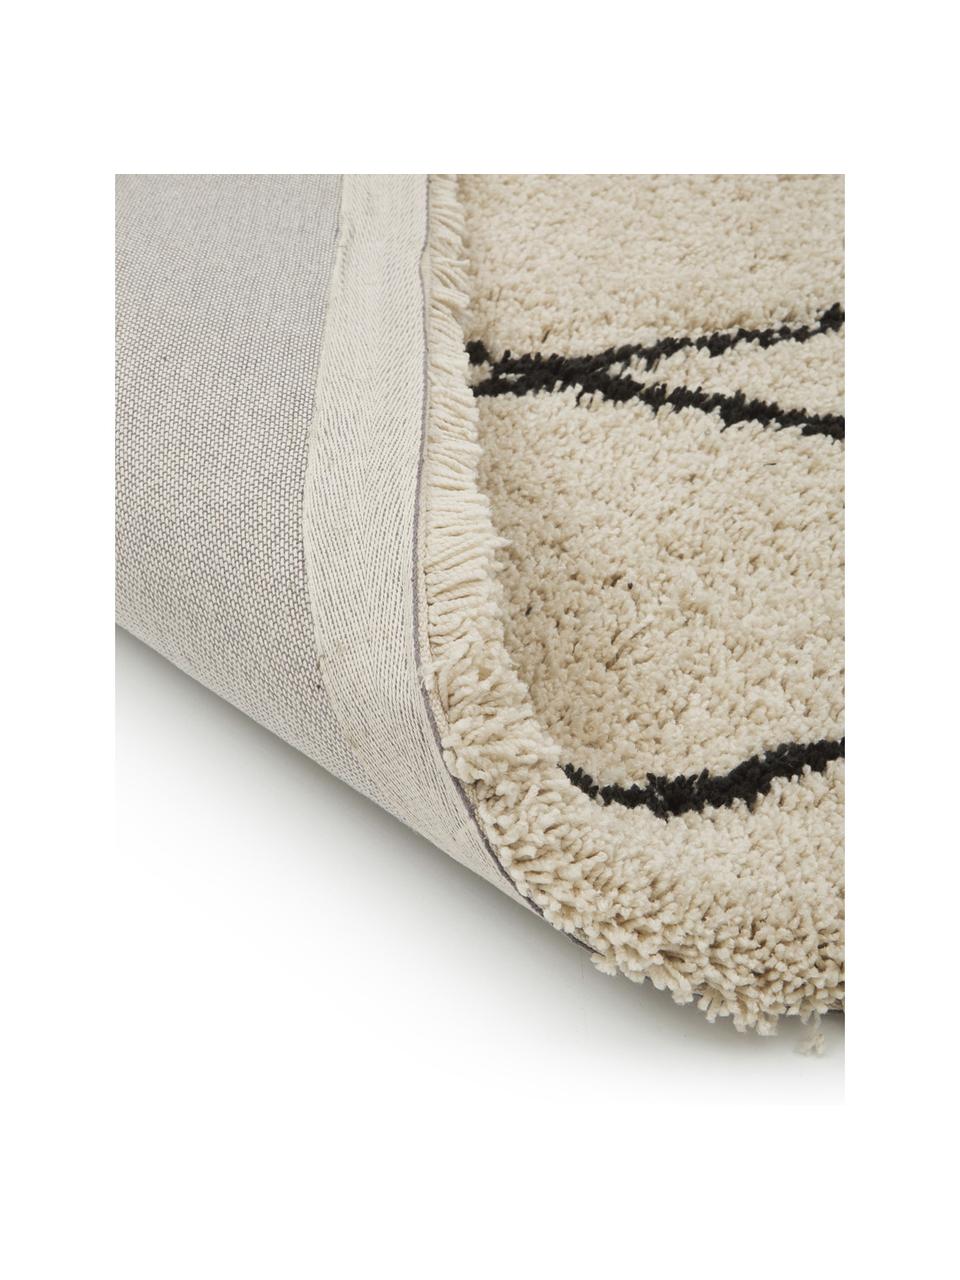 Flauschiger Hochflor-Teppich Naima mit Fransen, handgetuftet, Flor: 100% Polyester, Beige, Schwarz, B 200 x L 300 cm (Grösse L)